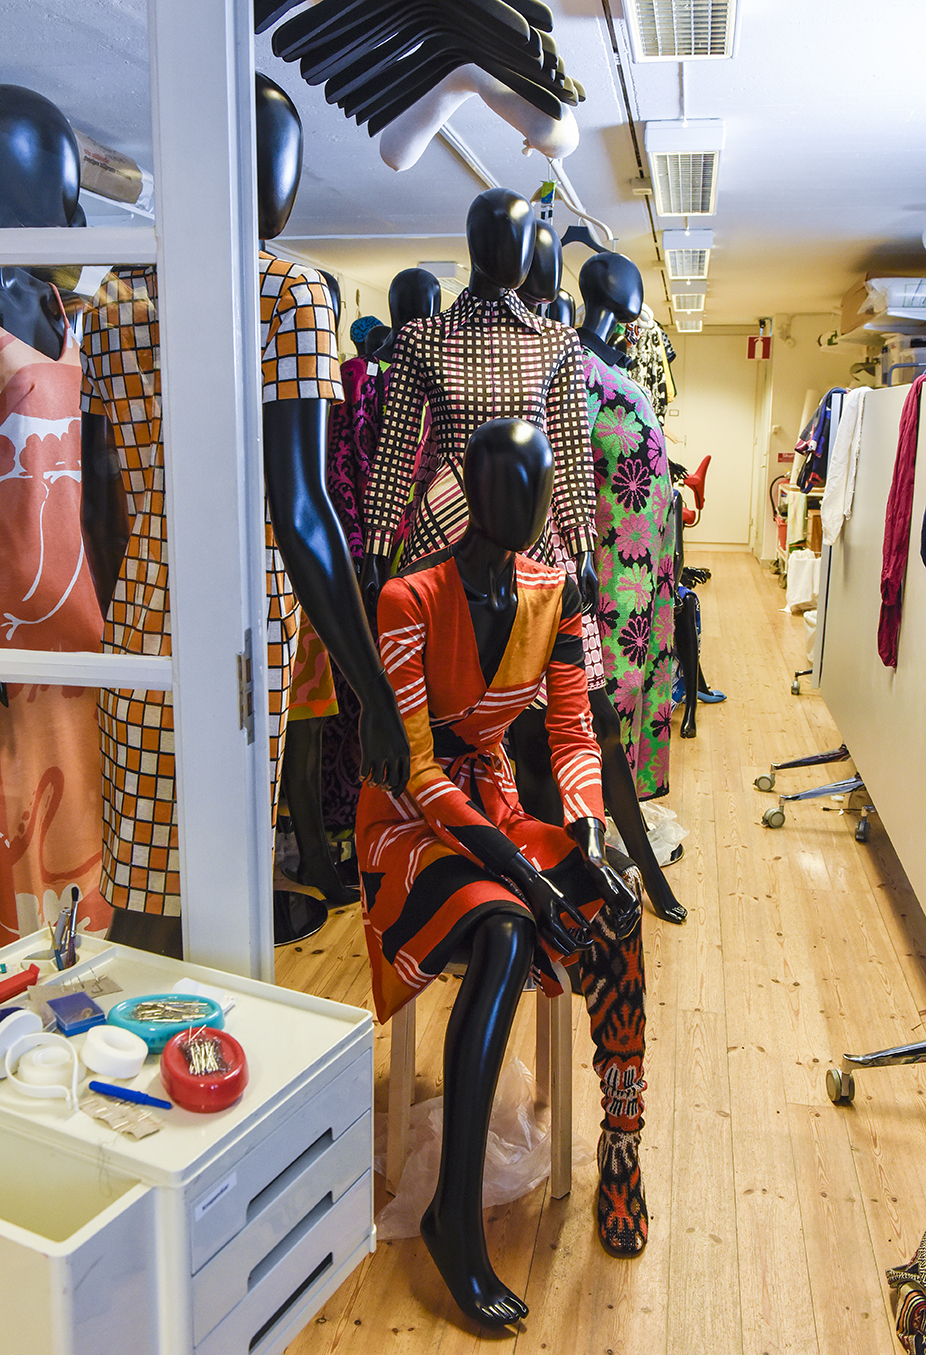 Bakom kulisserna väntar dockor klädda i Katja of Sweden-design på att få komma på plats i utställningen. Foto: Viveca Ohlsson/Kulturen